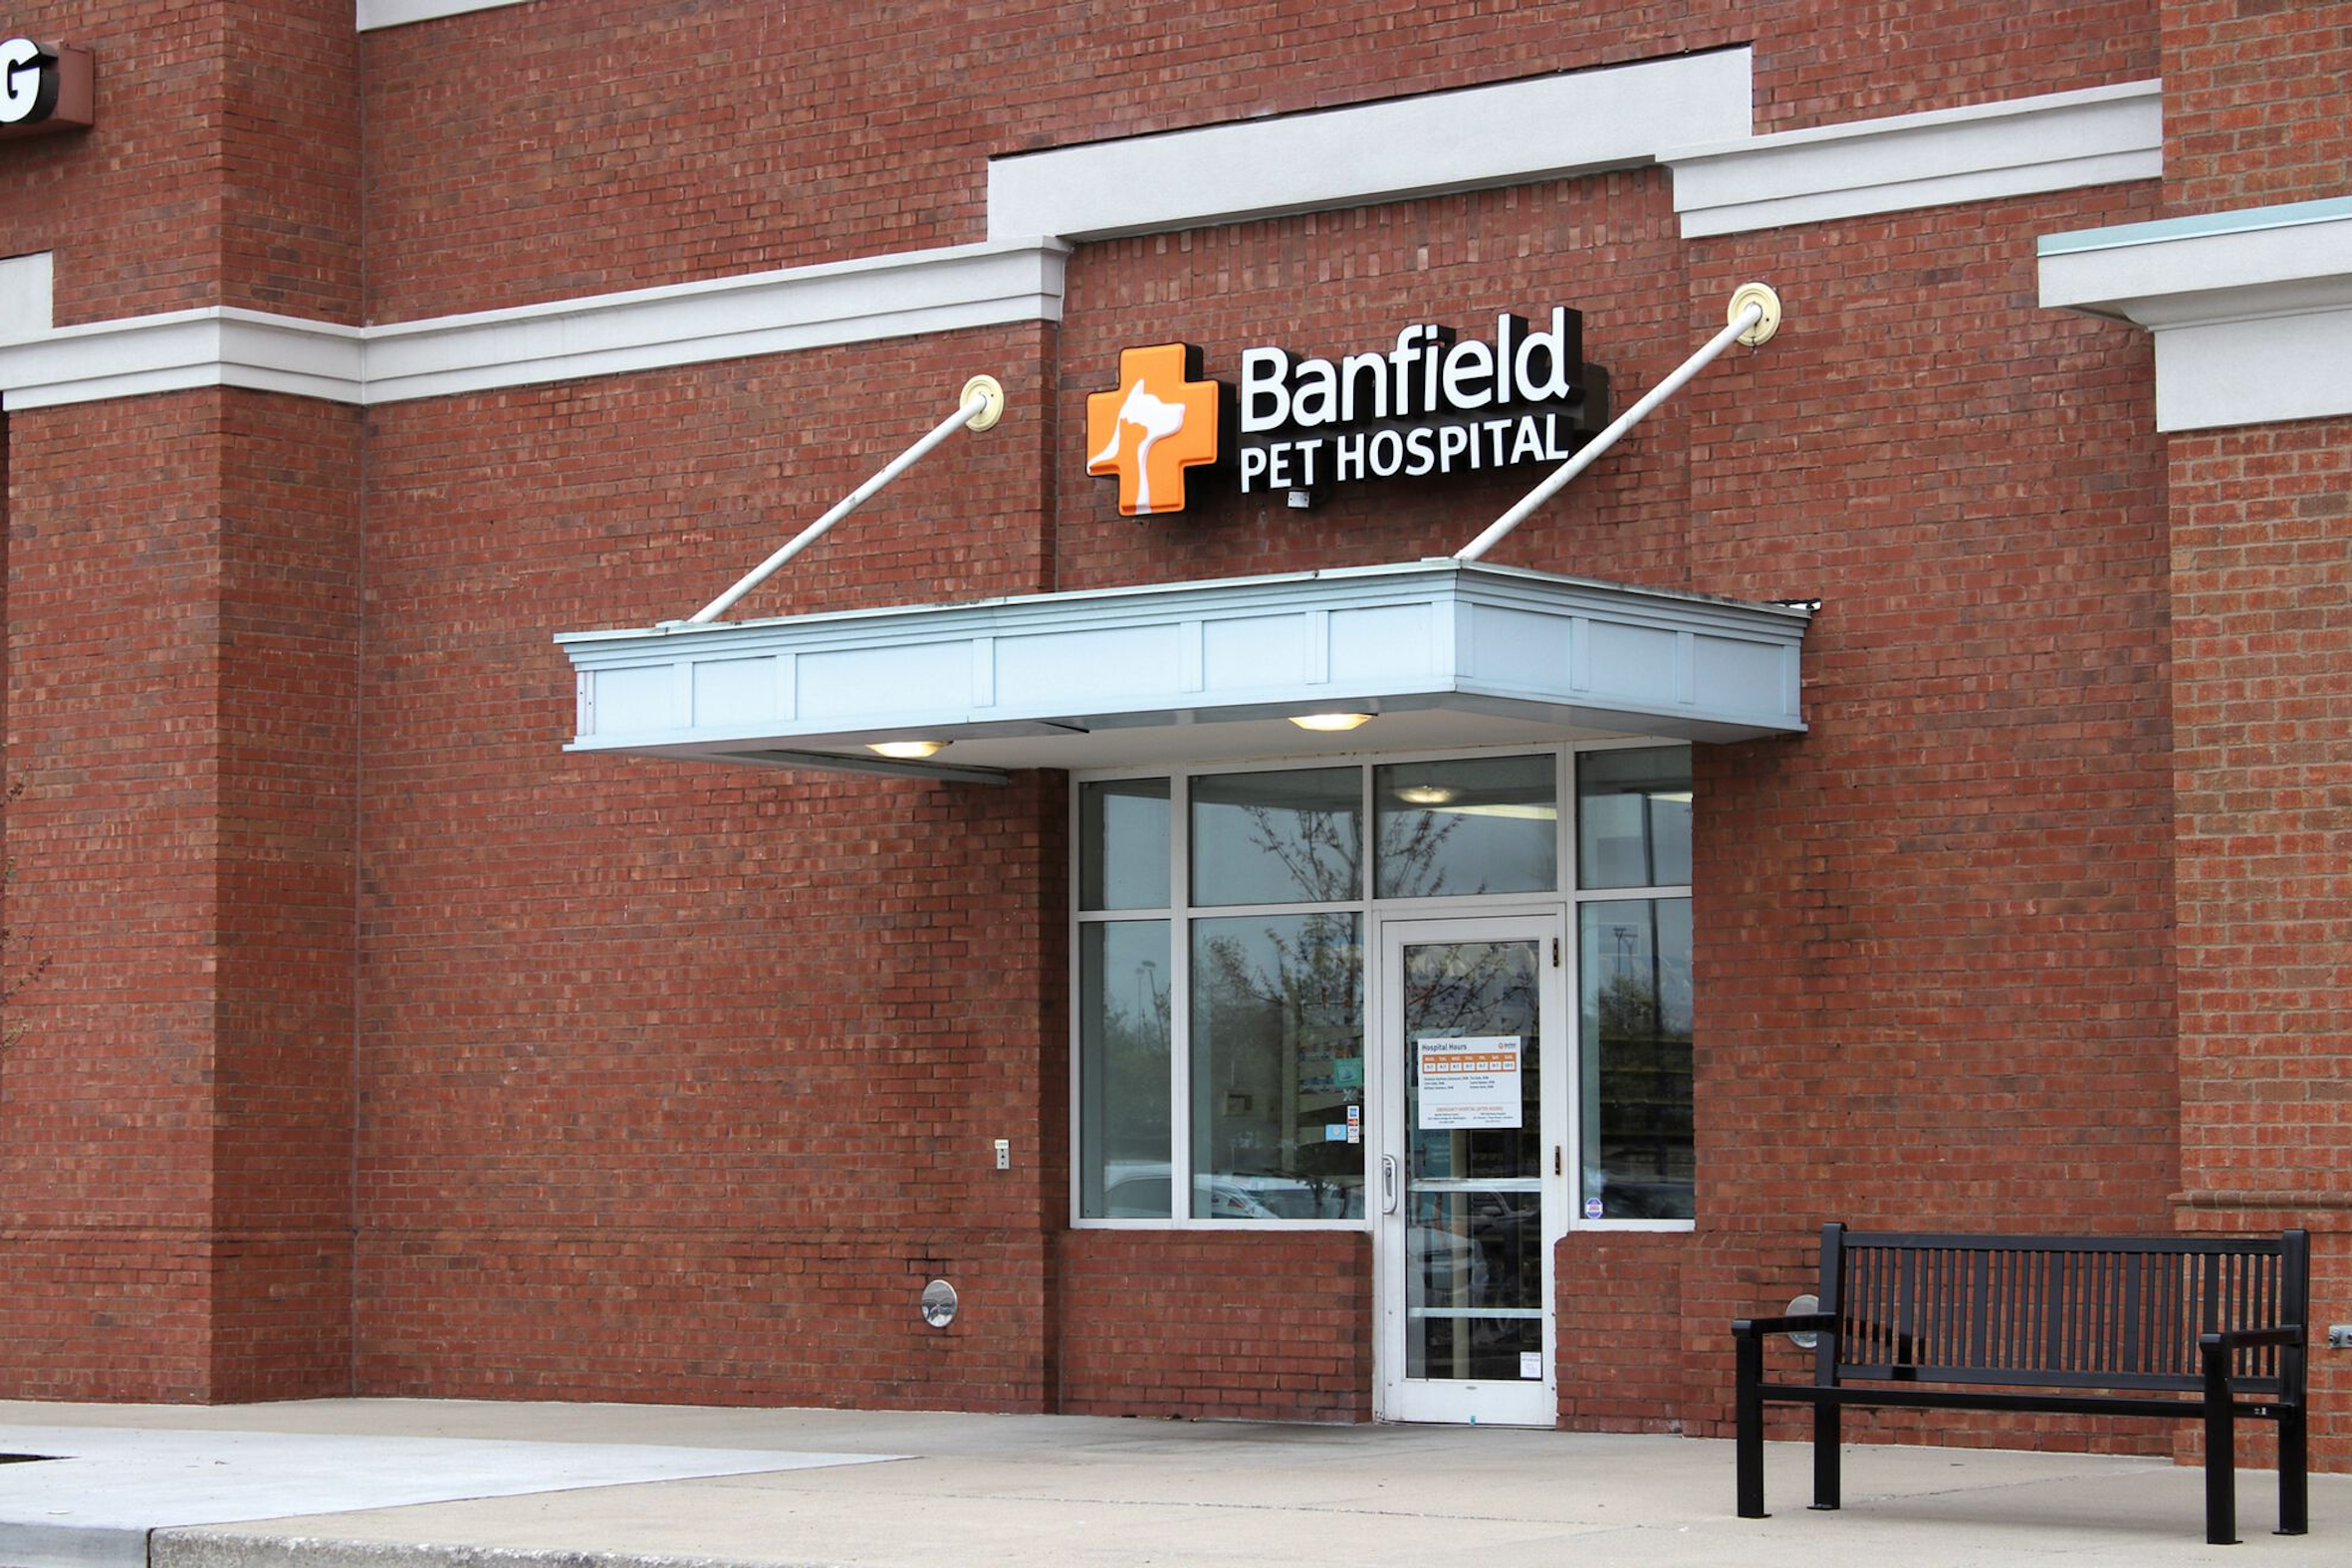 Mars Petcare possiede attualmente più di 2.300 cliniche con vari nomi, tra cui Banfield negli Stati Uniti.